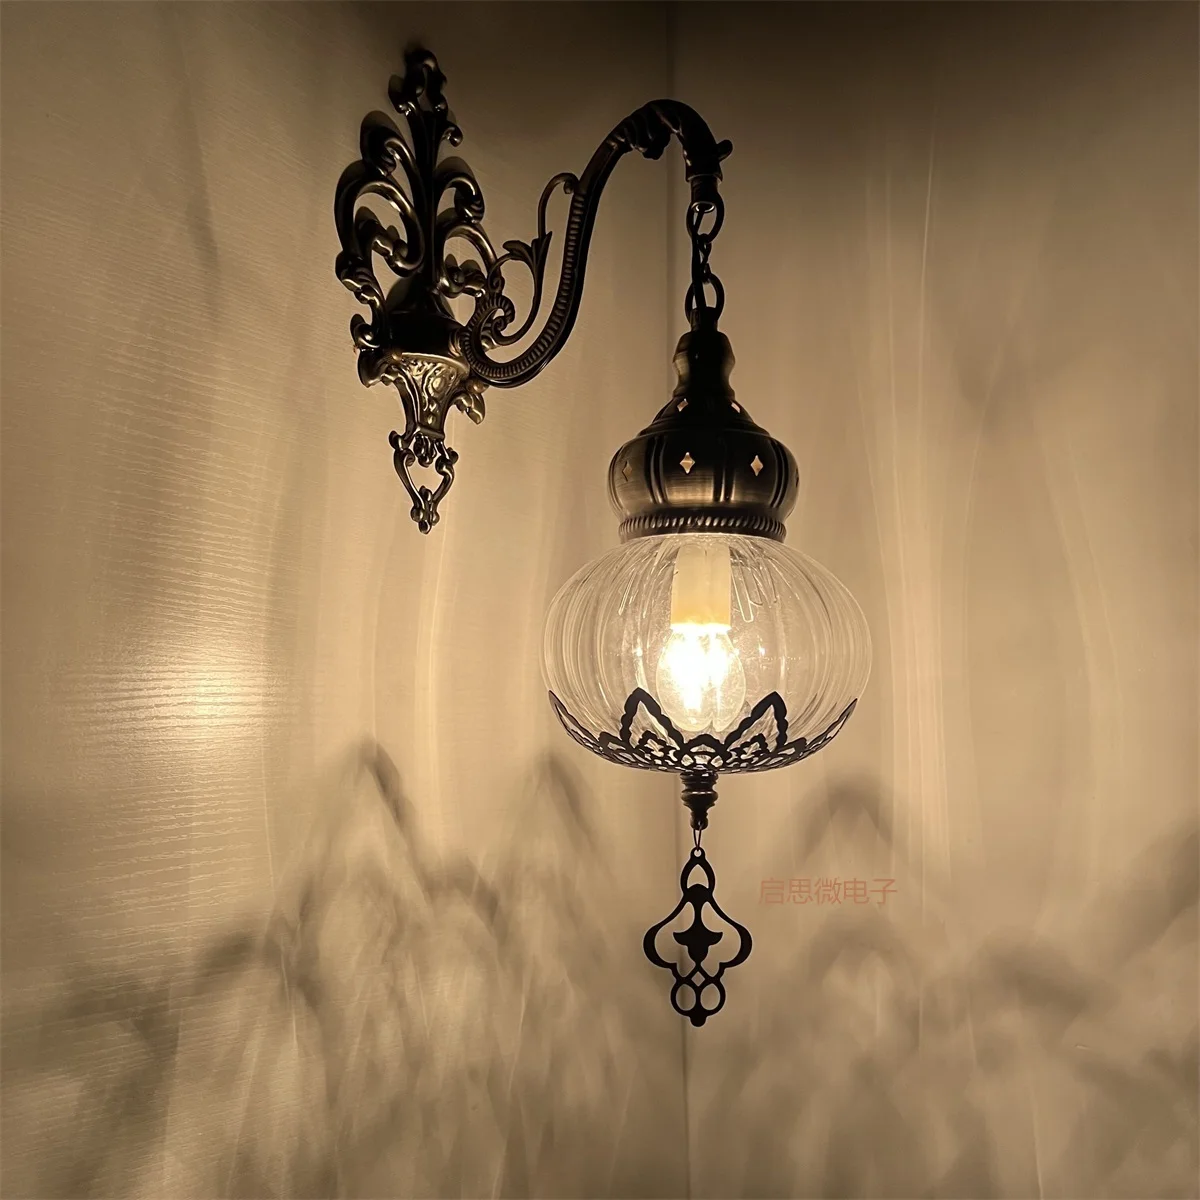 Lámparas Led De Pared talladas huecas hechas a mano, luz De cristal transparente para decoración del hogar, apliques De Pared, Luminaria